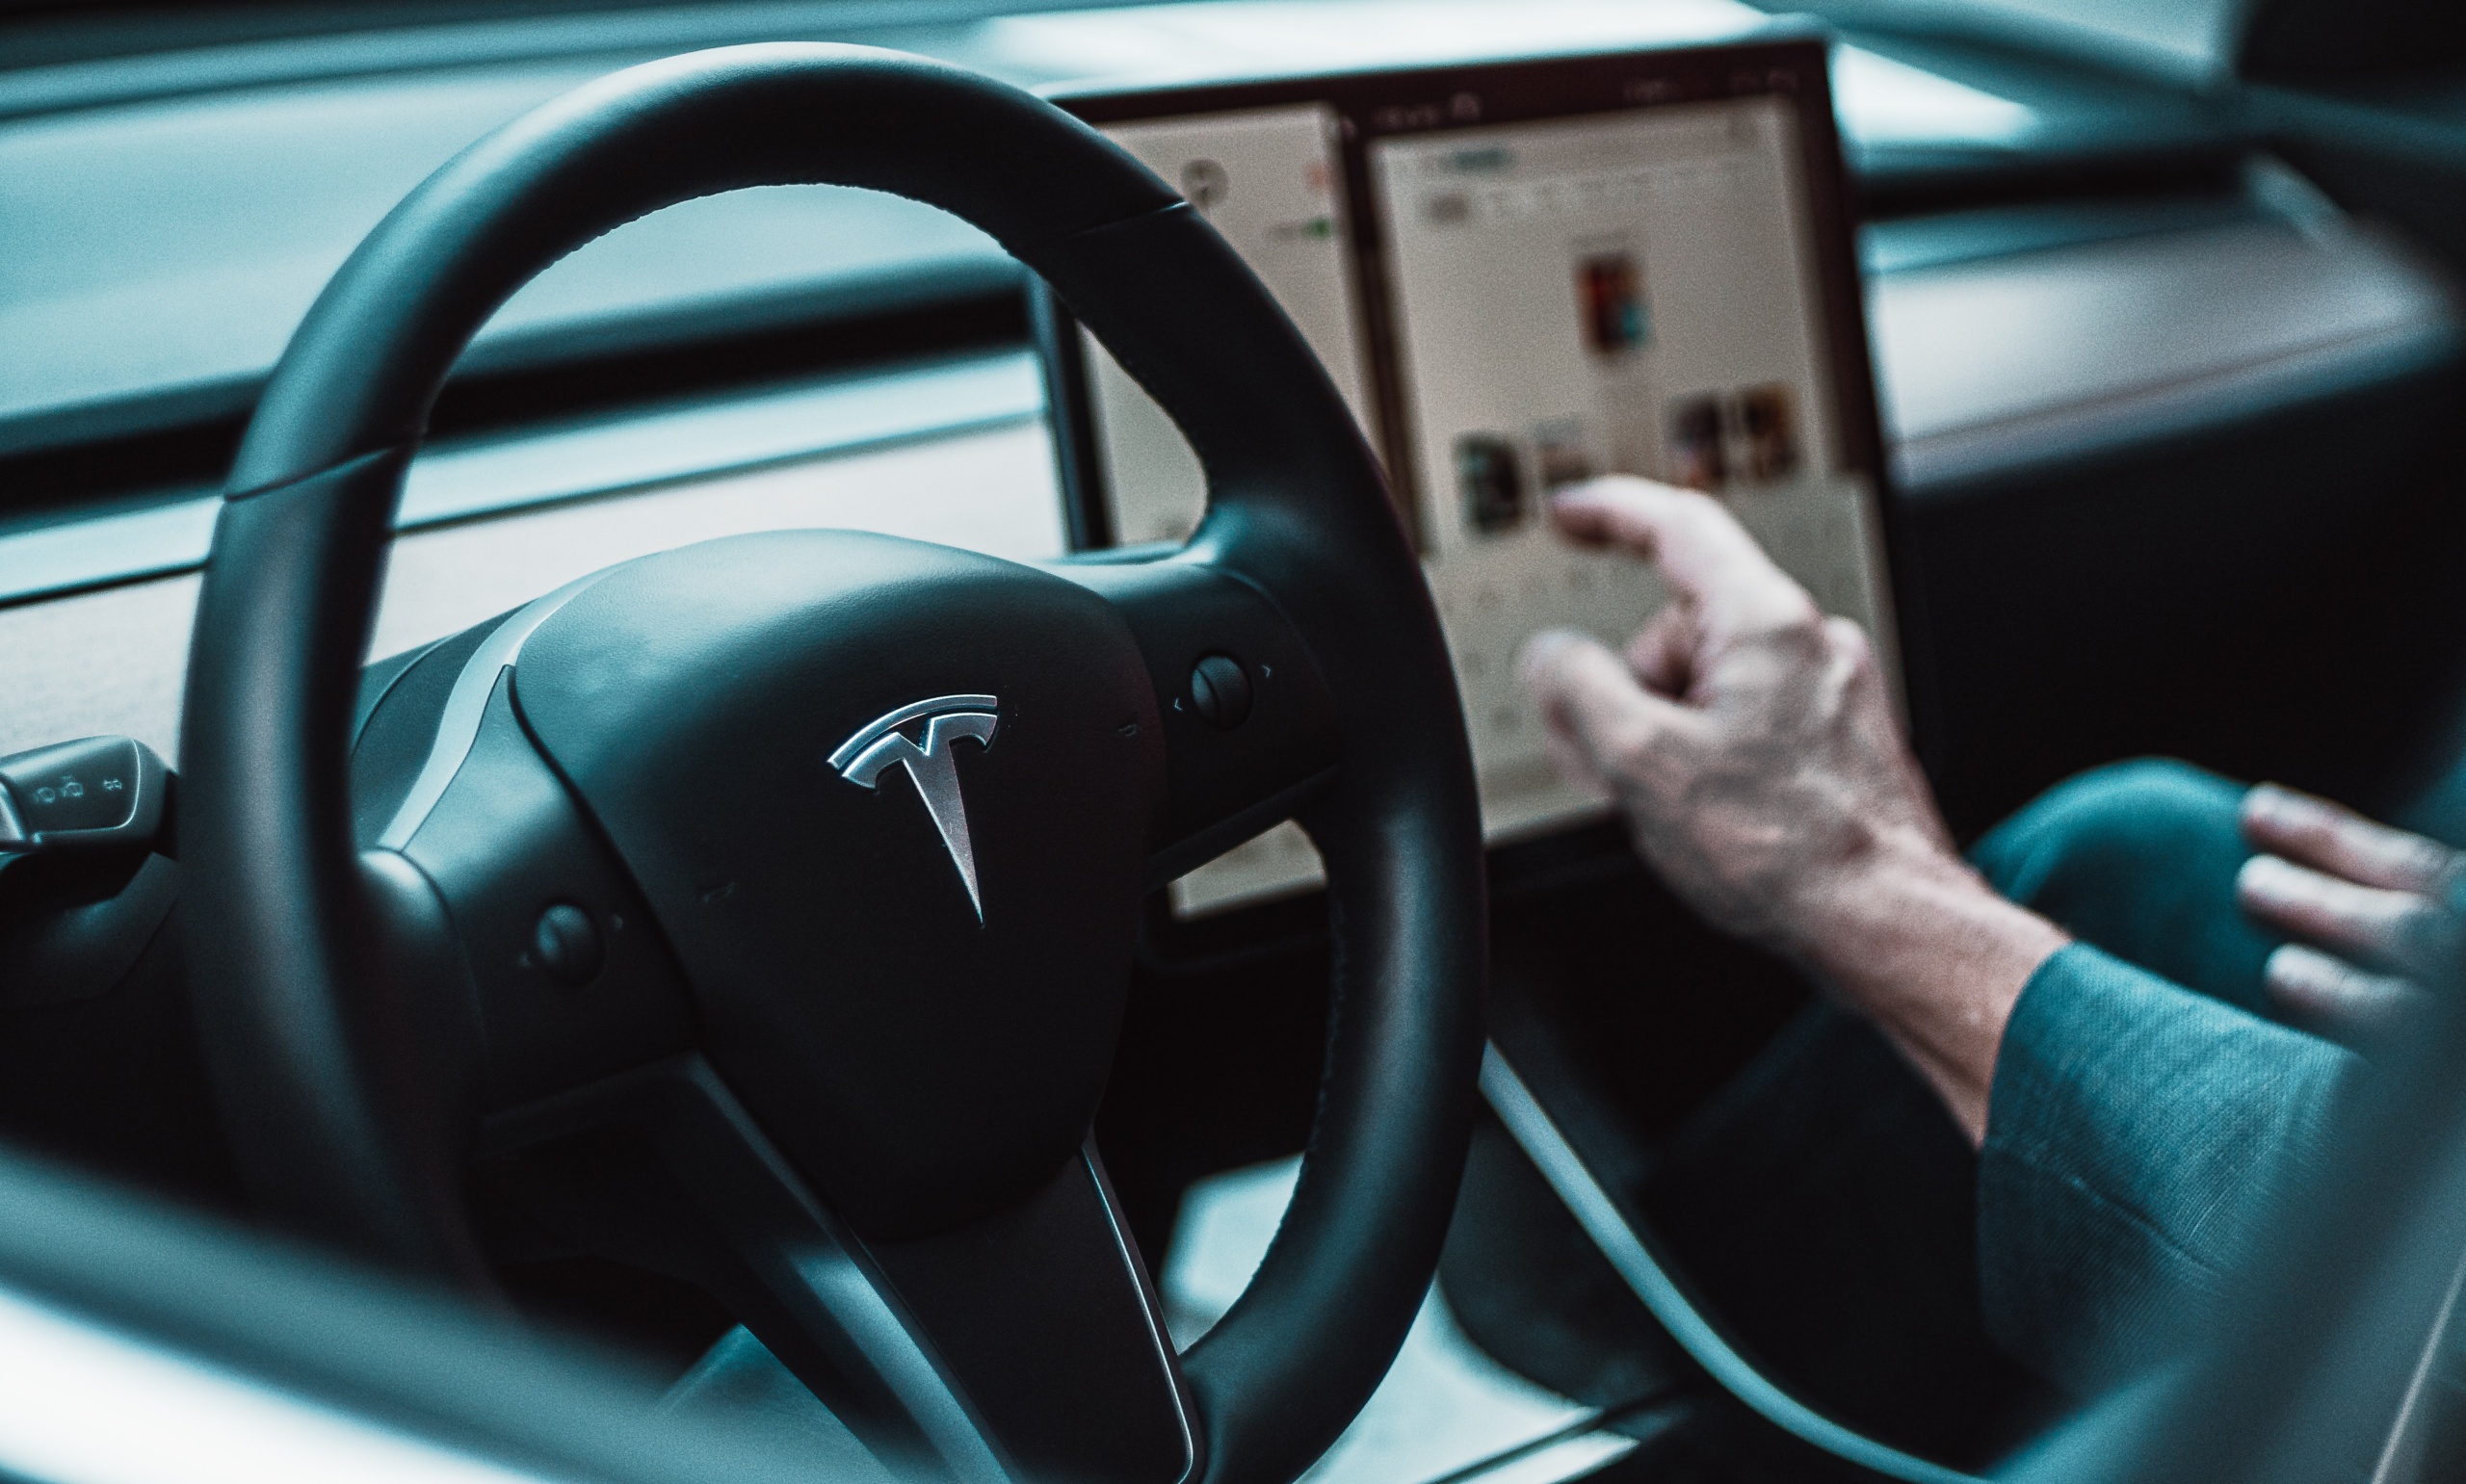 Tesla требует убрать из доступа видео, на котором ее электромобиль с бета-версией полного автопилота FSD сбивает манекенов в виде детей